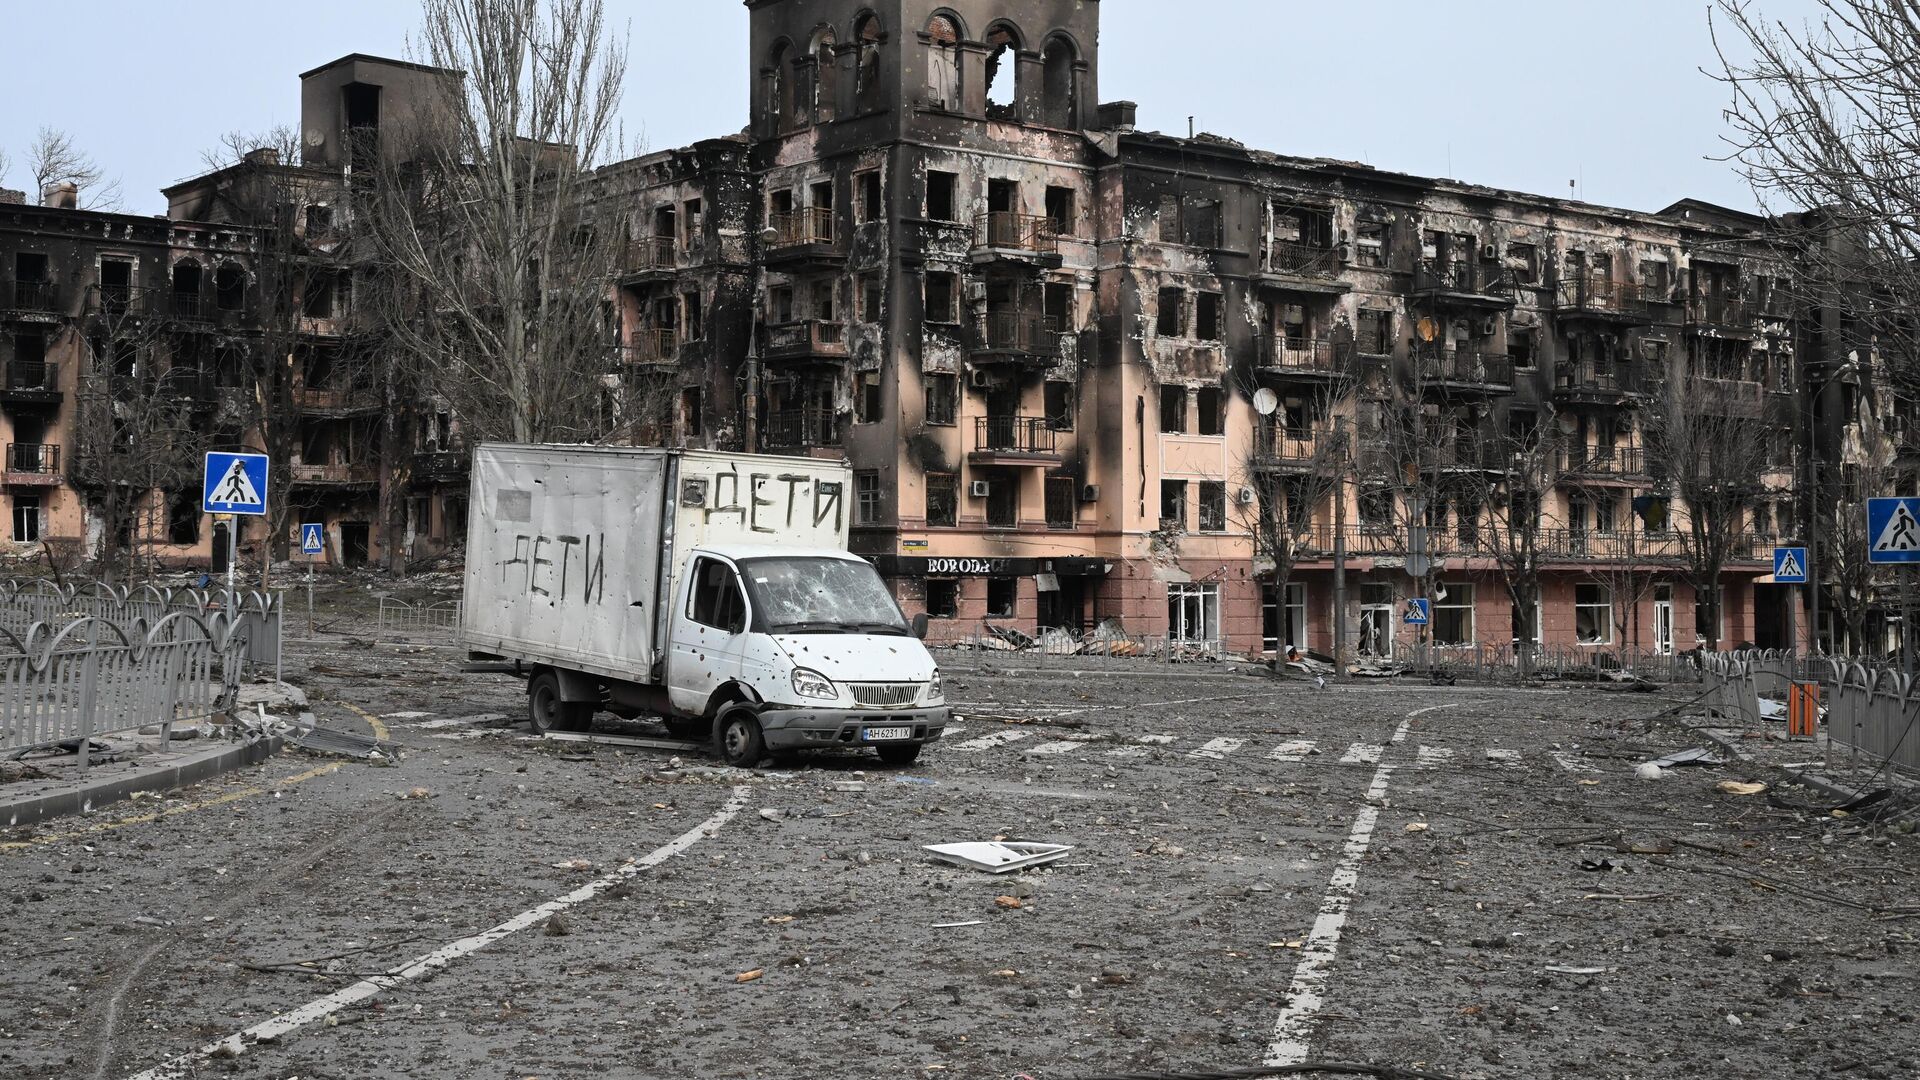 Chiếc xe có dòng chữ Trẻ em tại Mariupol, Cộng hòa Nhân dân Donetsk - Sputnik Việt Nam, 1920, 07.05.2022